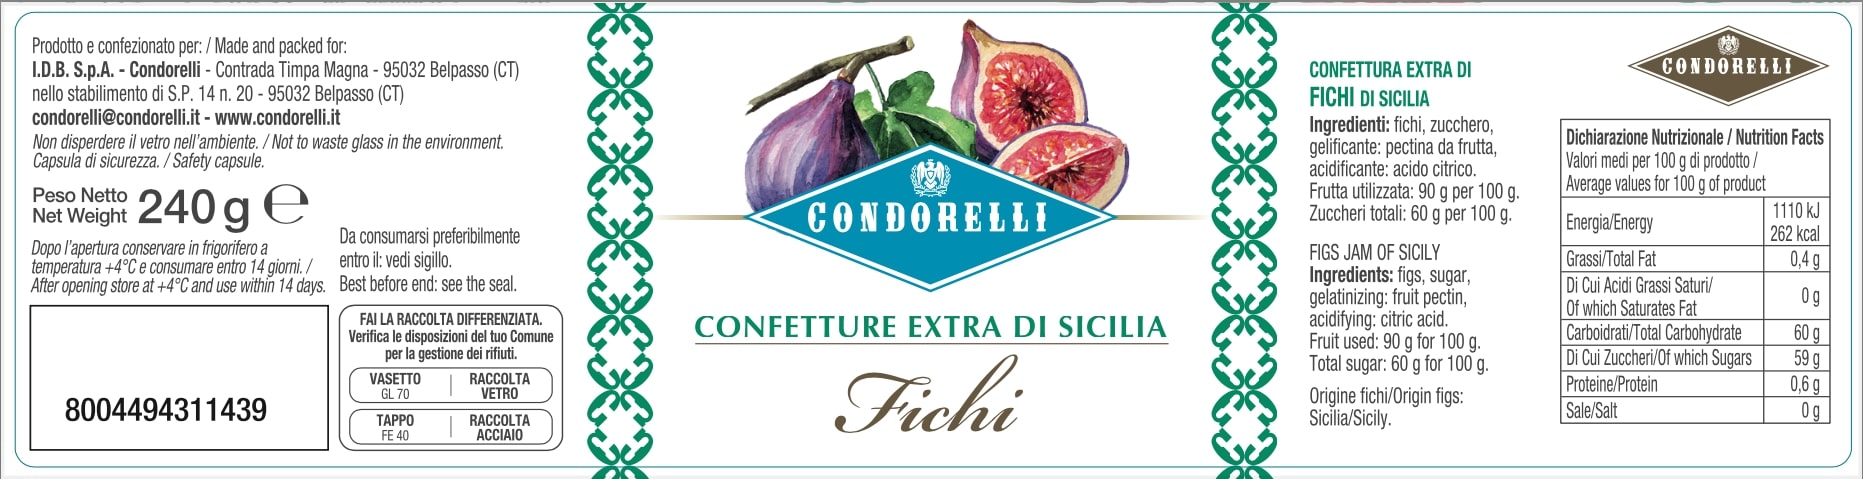 Confetture Extra di Sicilia - Fichi